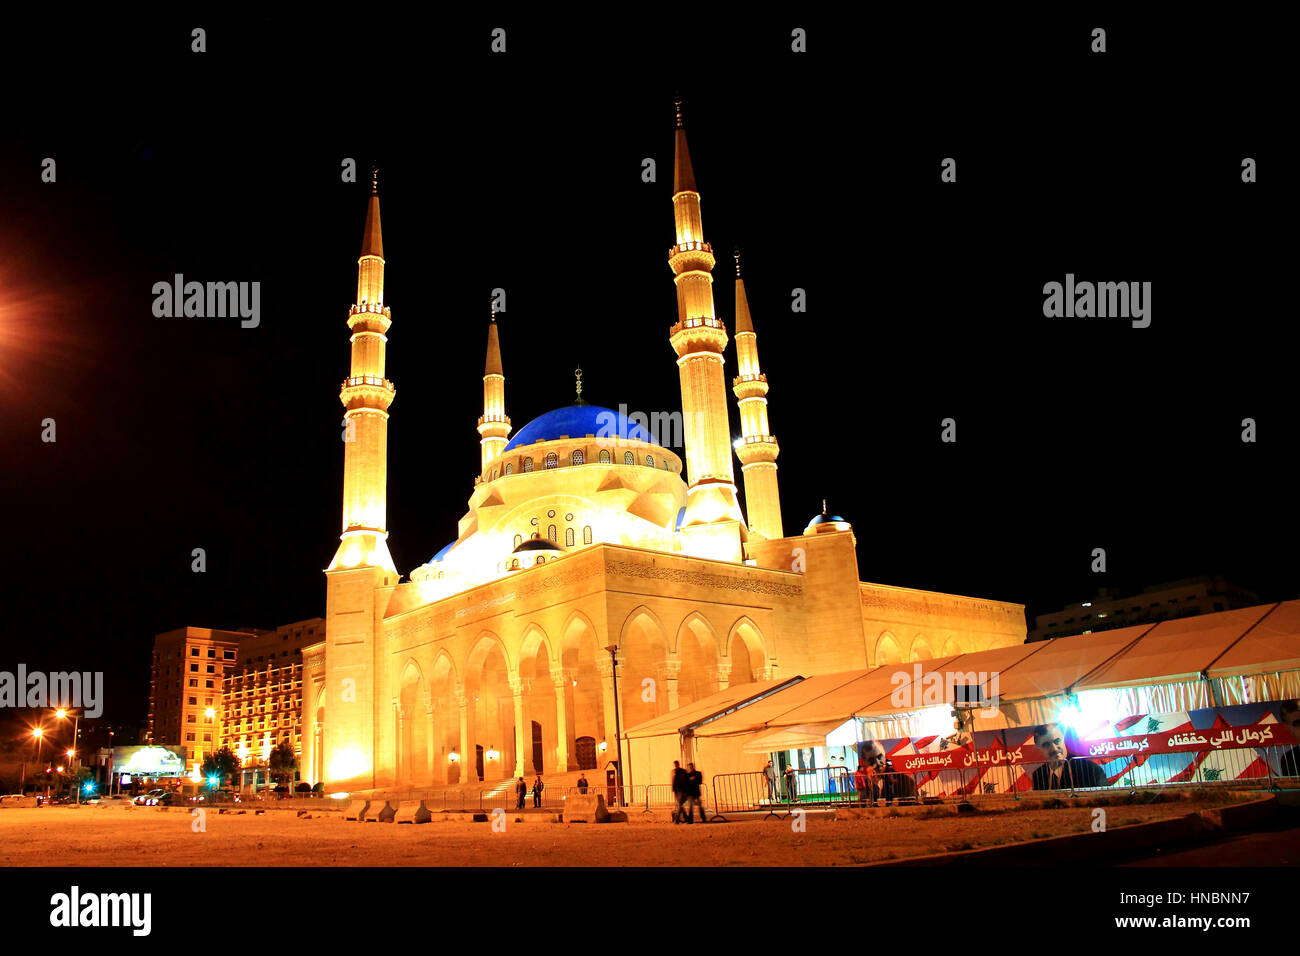 La mezquita de Al Amin iluminadas por la noche en Beirut, Líbano, carpas con los anuncios políticos e imágenes de Hariri y la bandera libanesa junto a Foto de stock